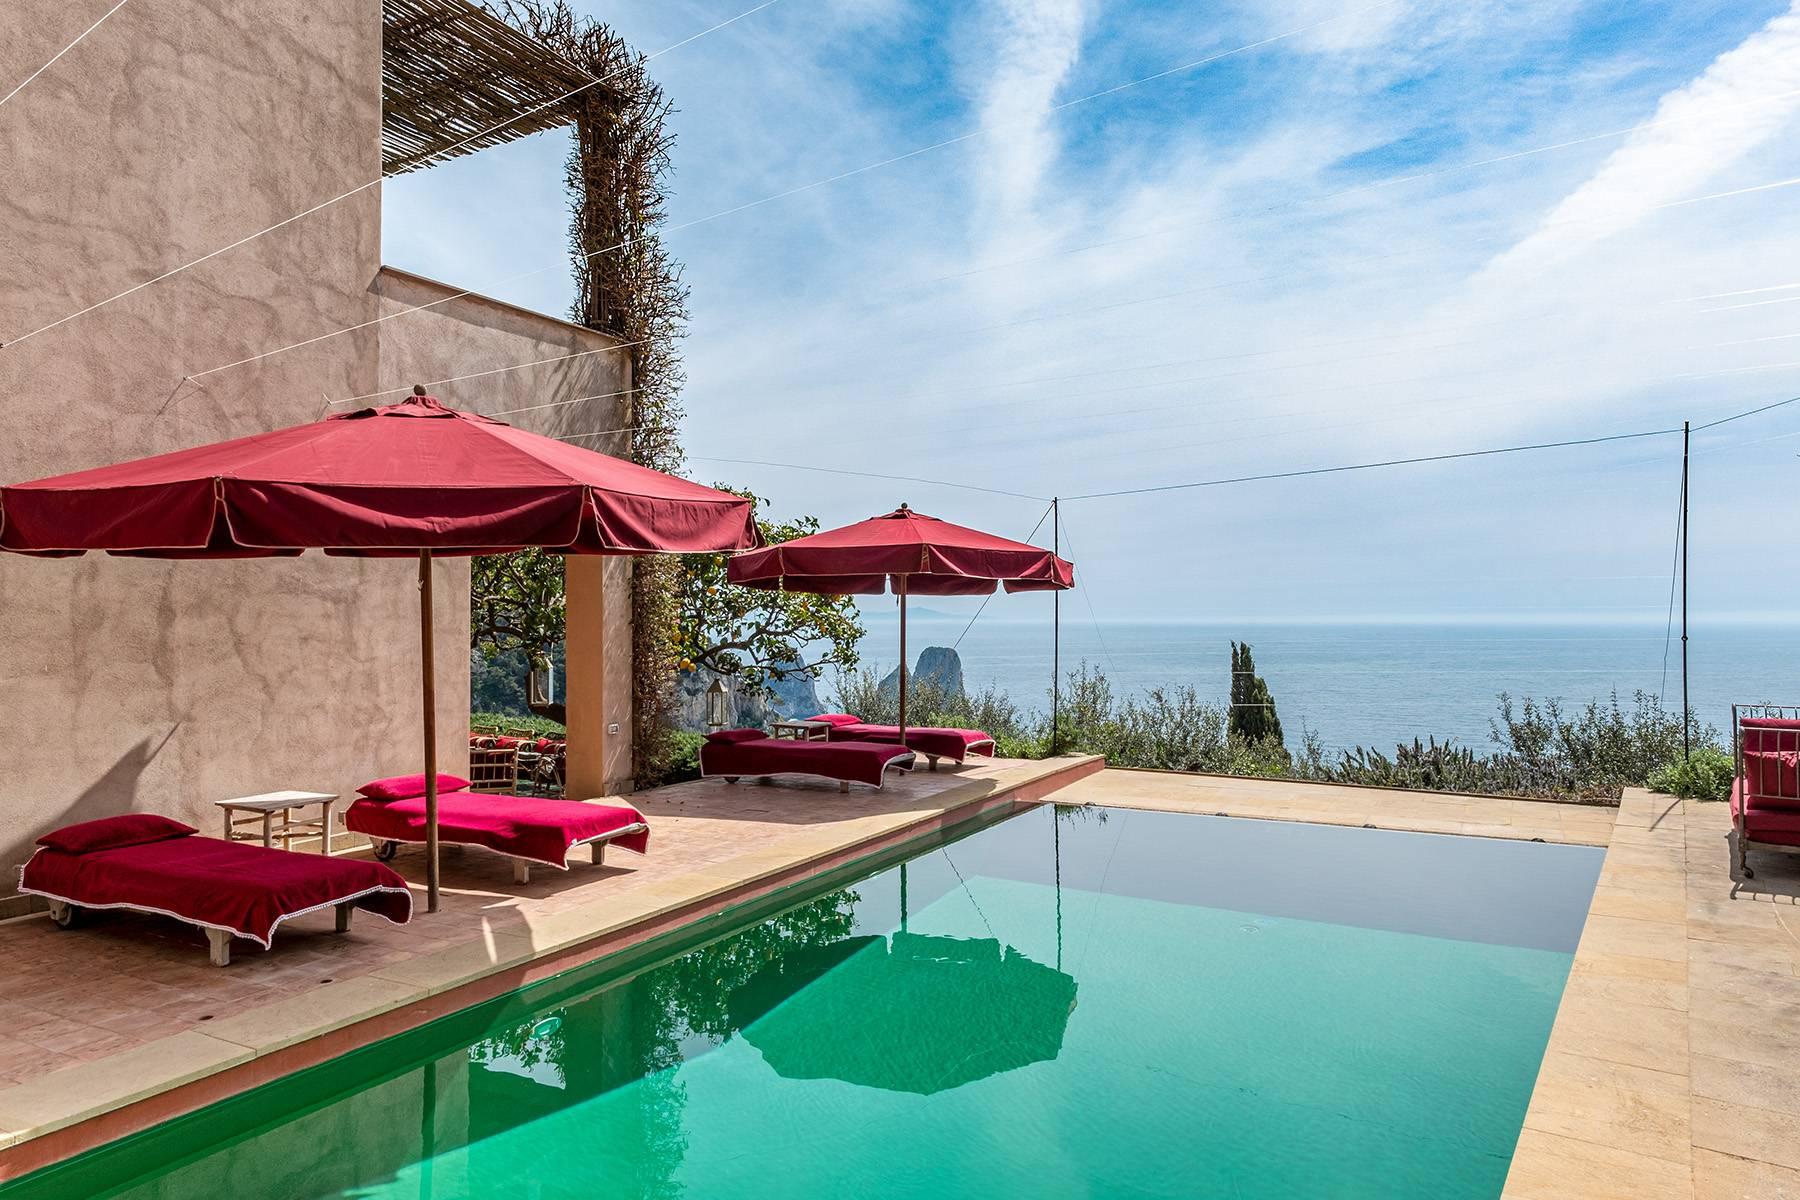 Remarquable villa design avec piscine sculptée surplombant les rochers Faraglioni. - 7